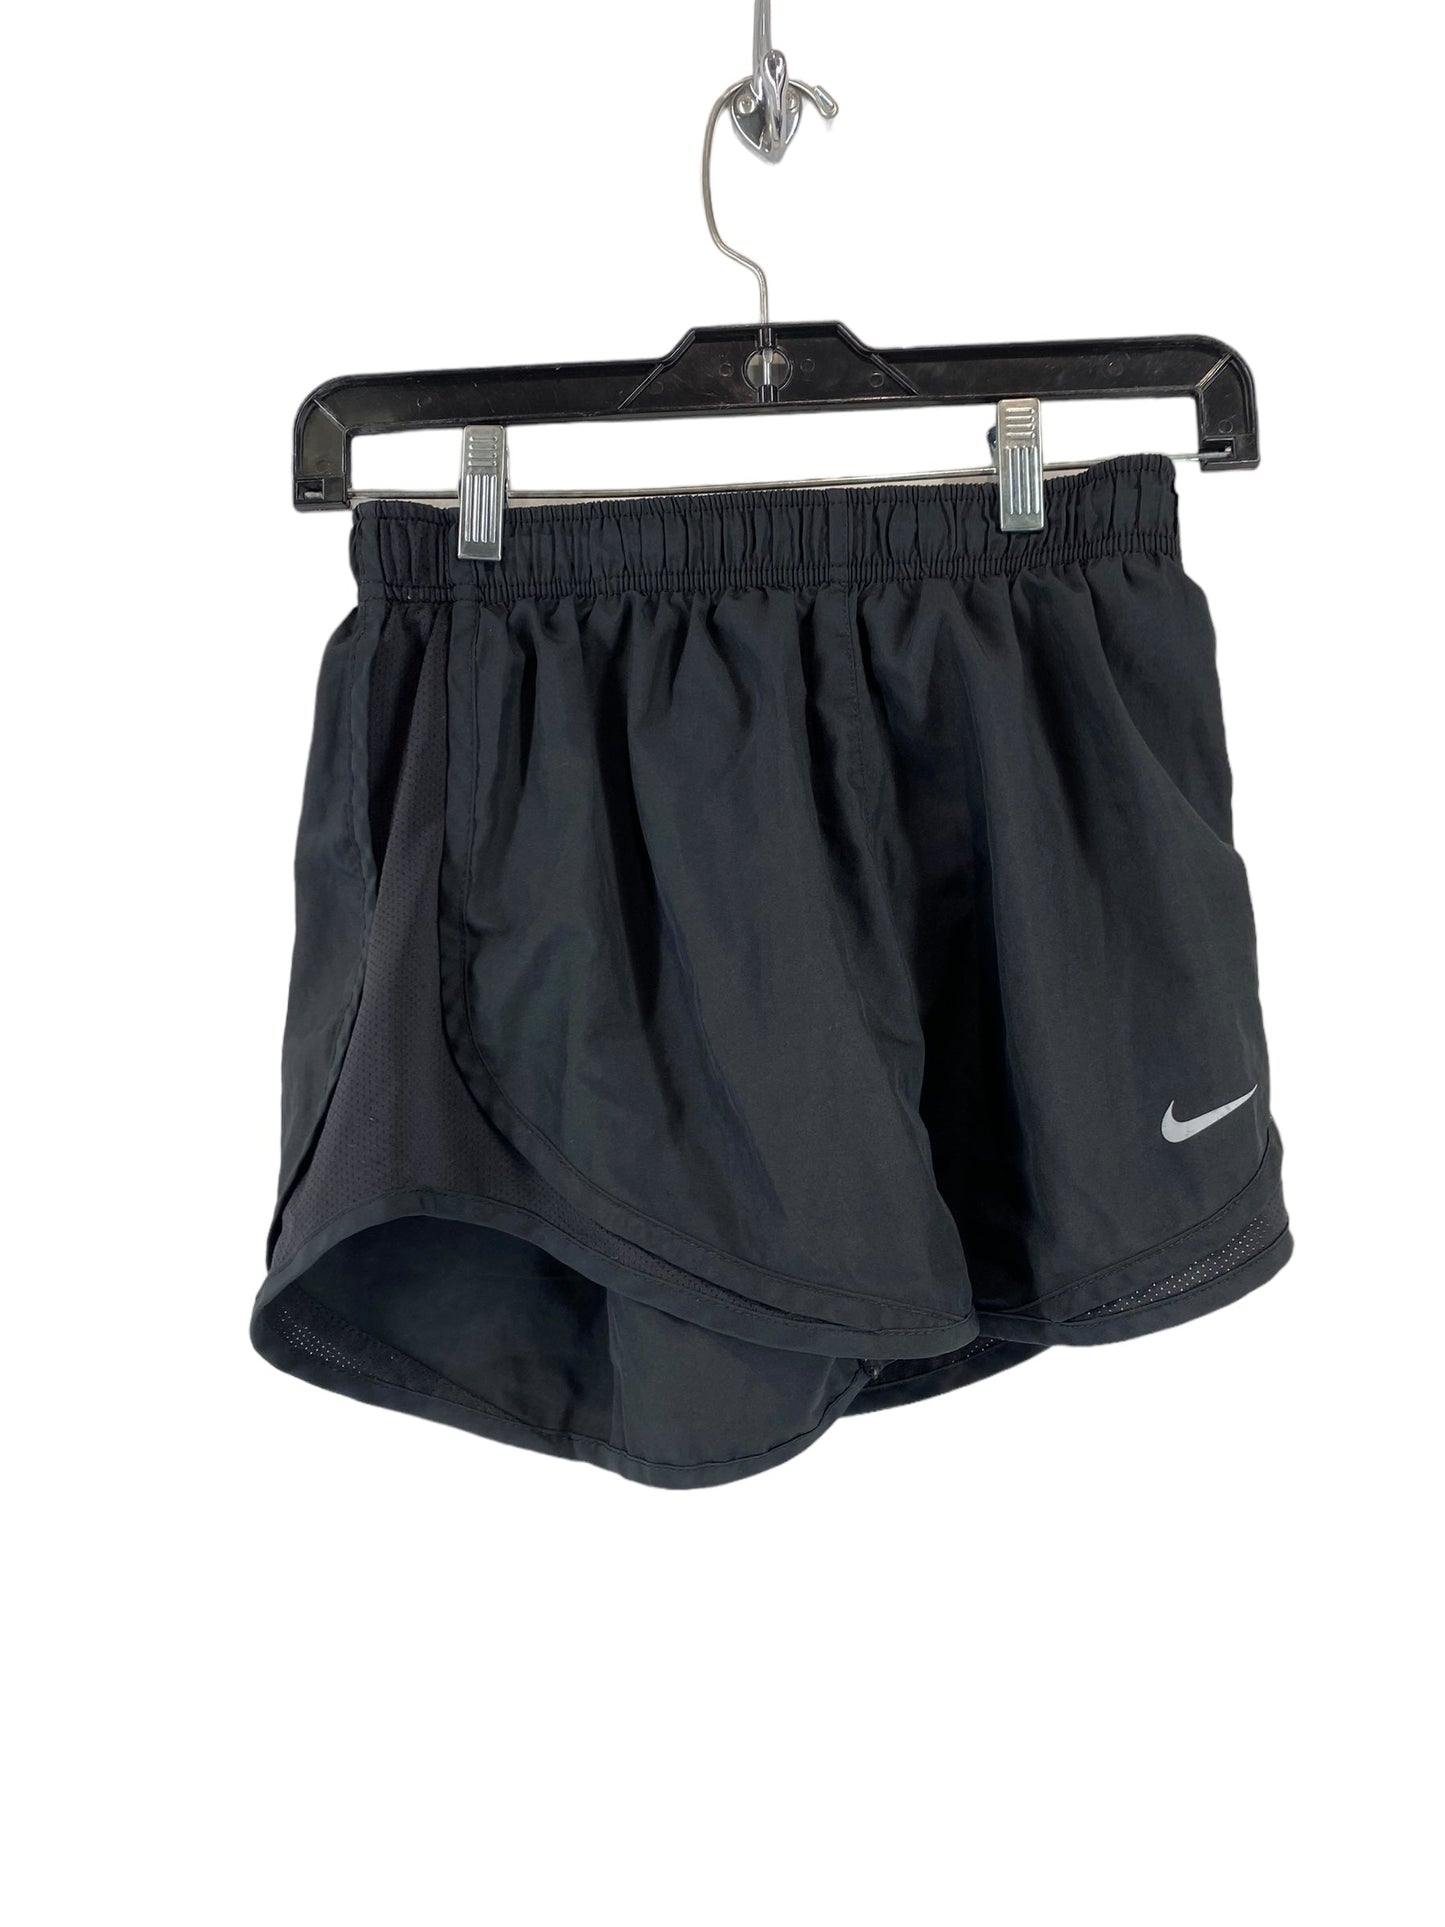 Black Athletic Shorts Nike, Size S